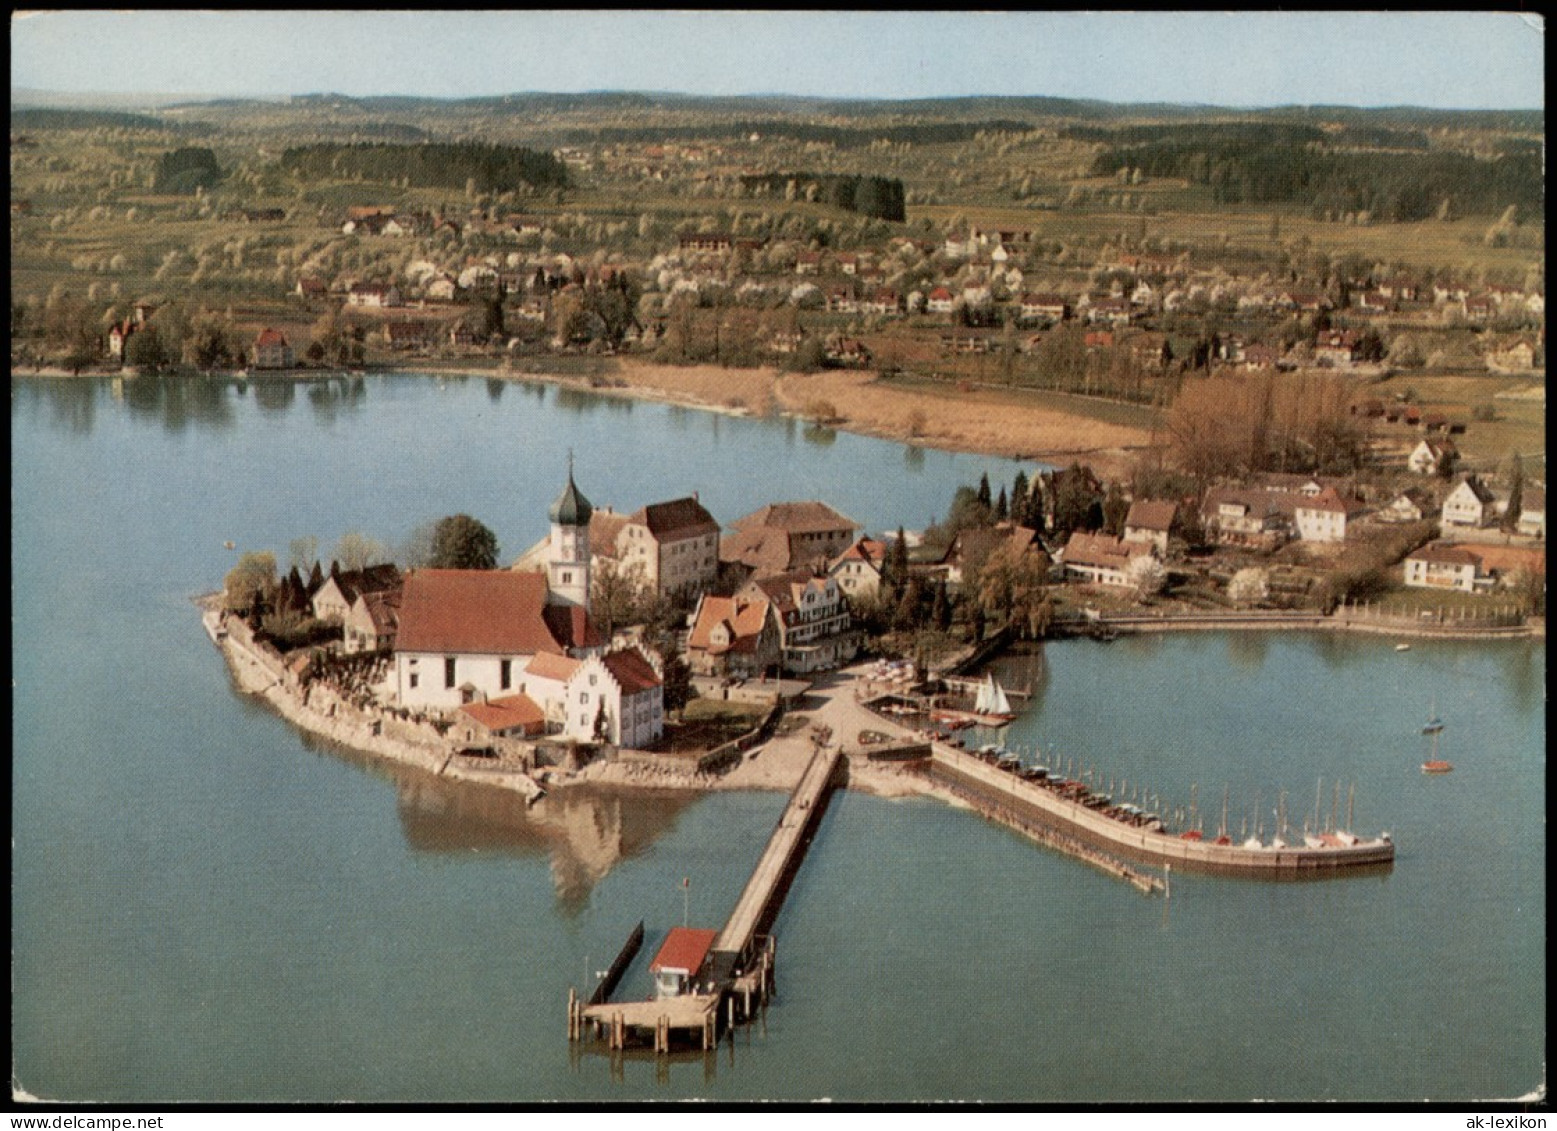 Ansichtskarte Wasserburg Am Bodensee Luftbild Luftaufnahme 1975 - Wasserburg (Bodensee)